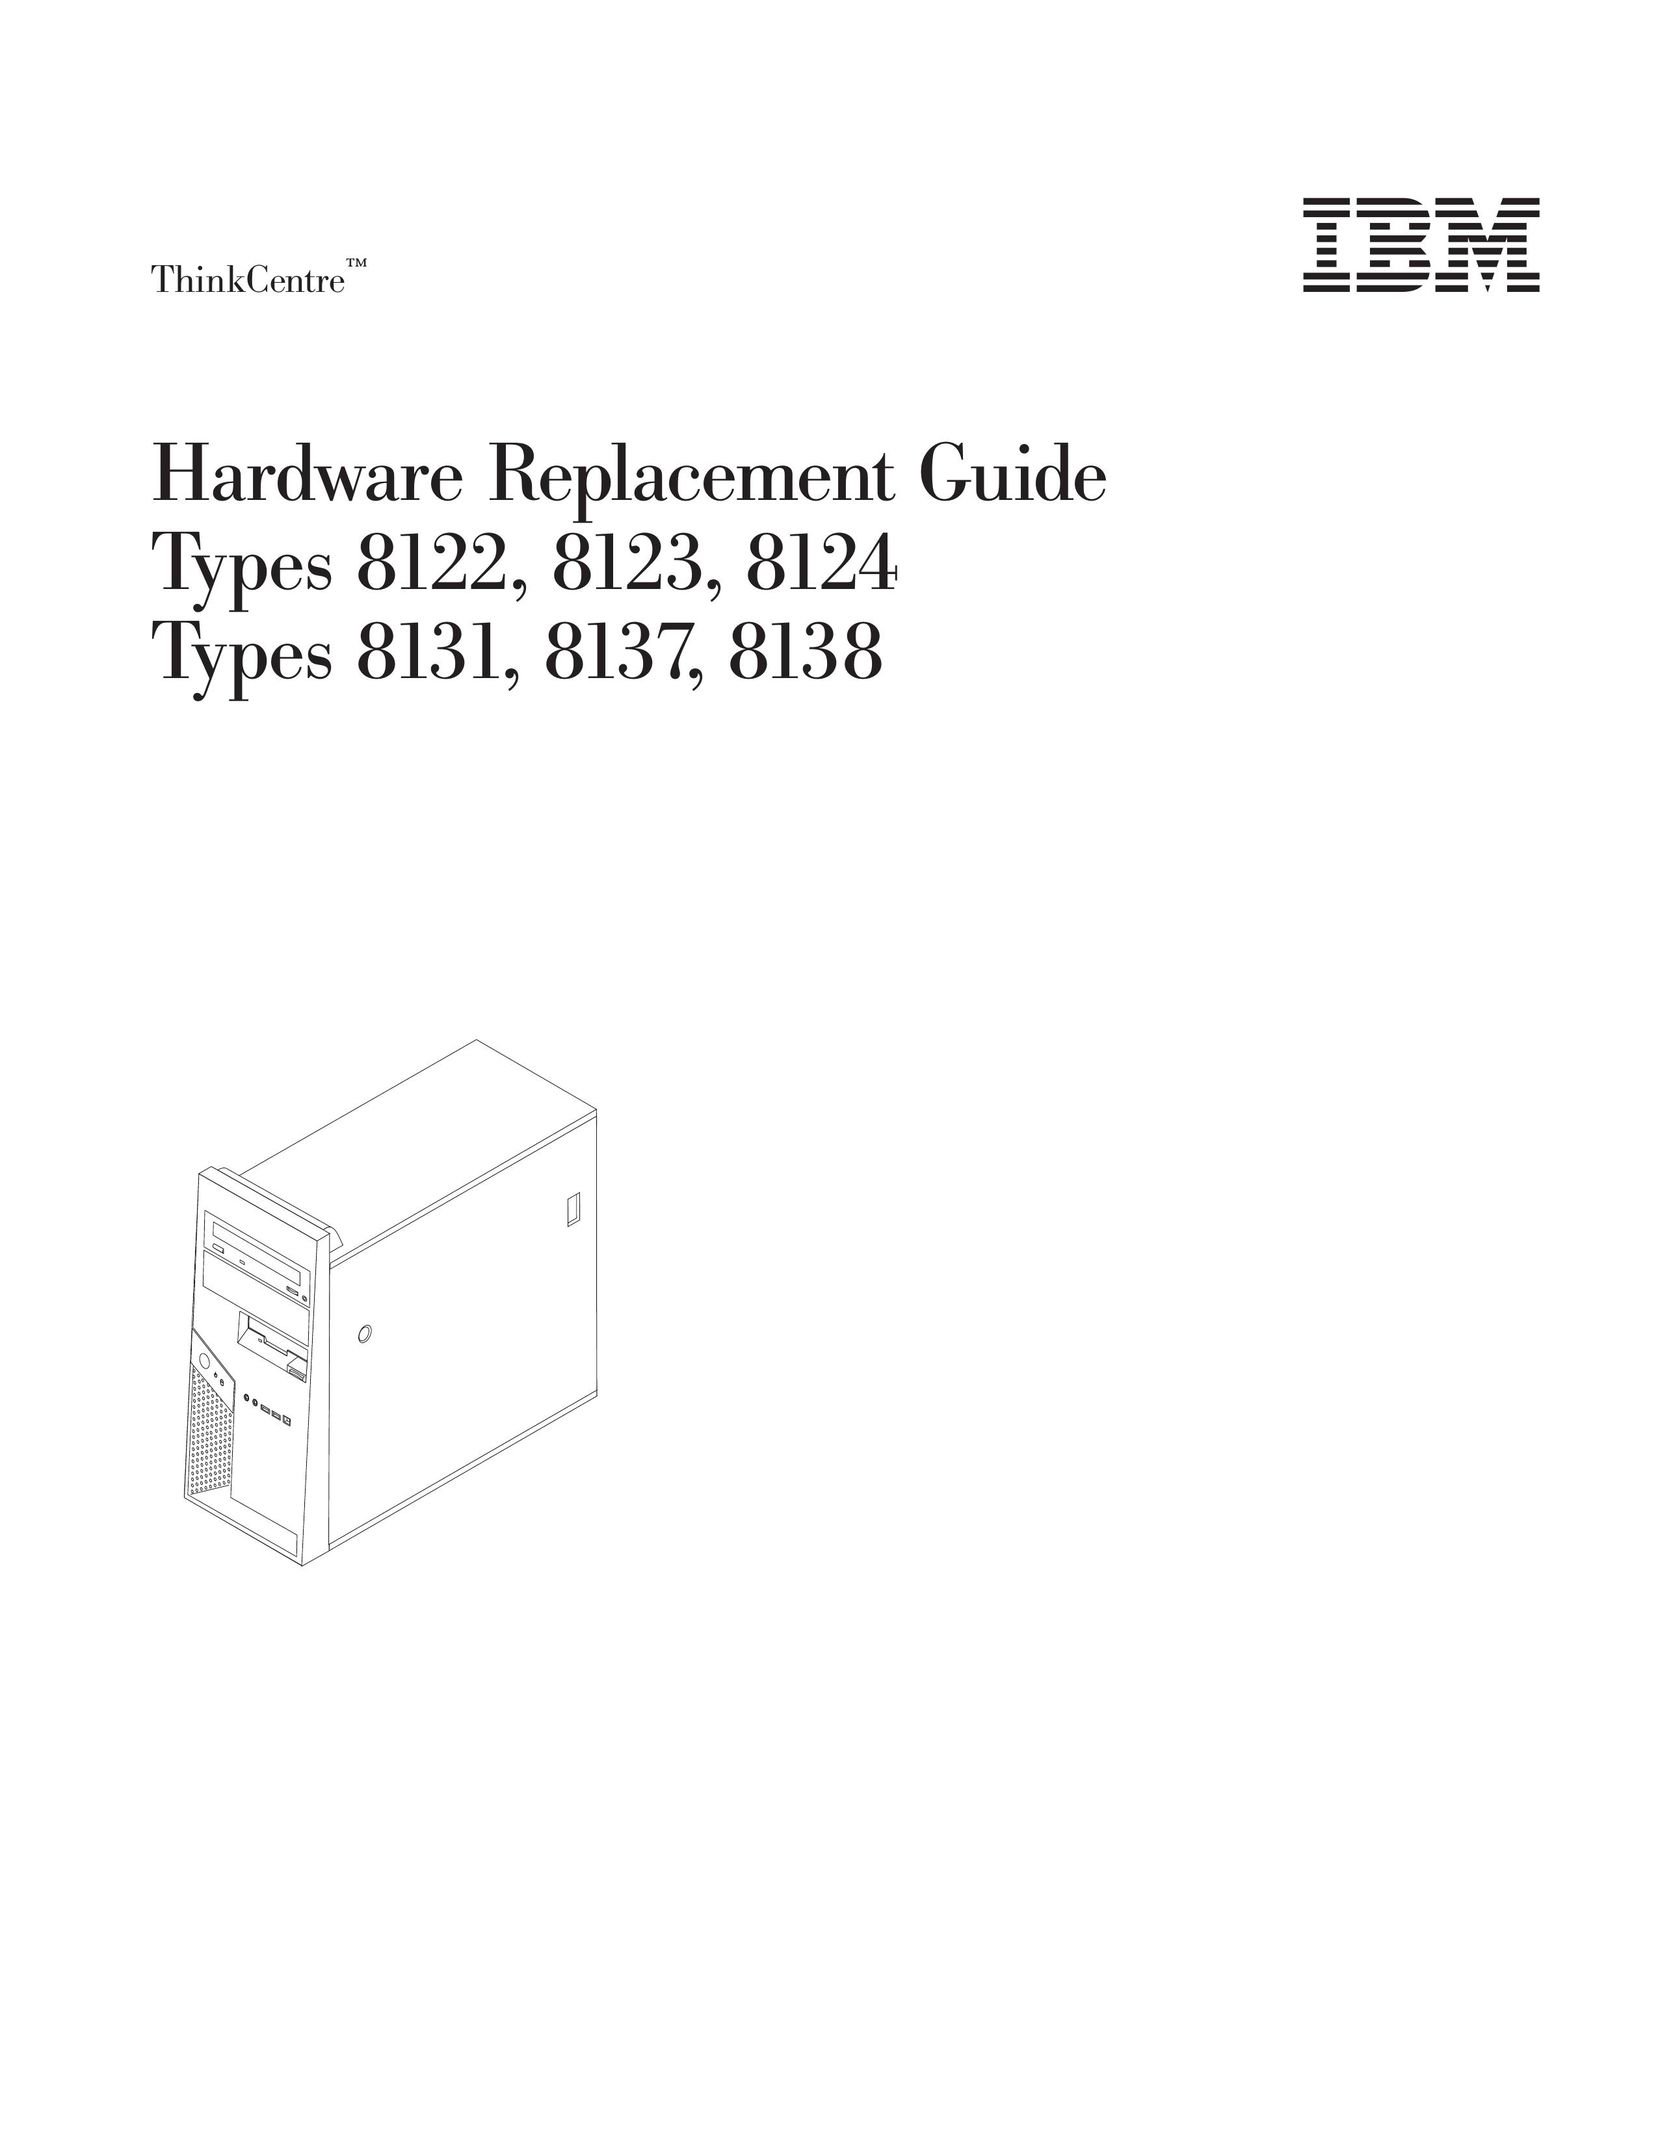 IBM 8131 Computer Hardware User Manual